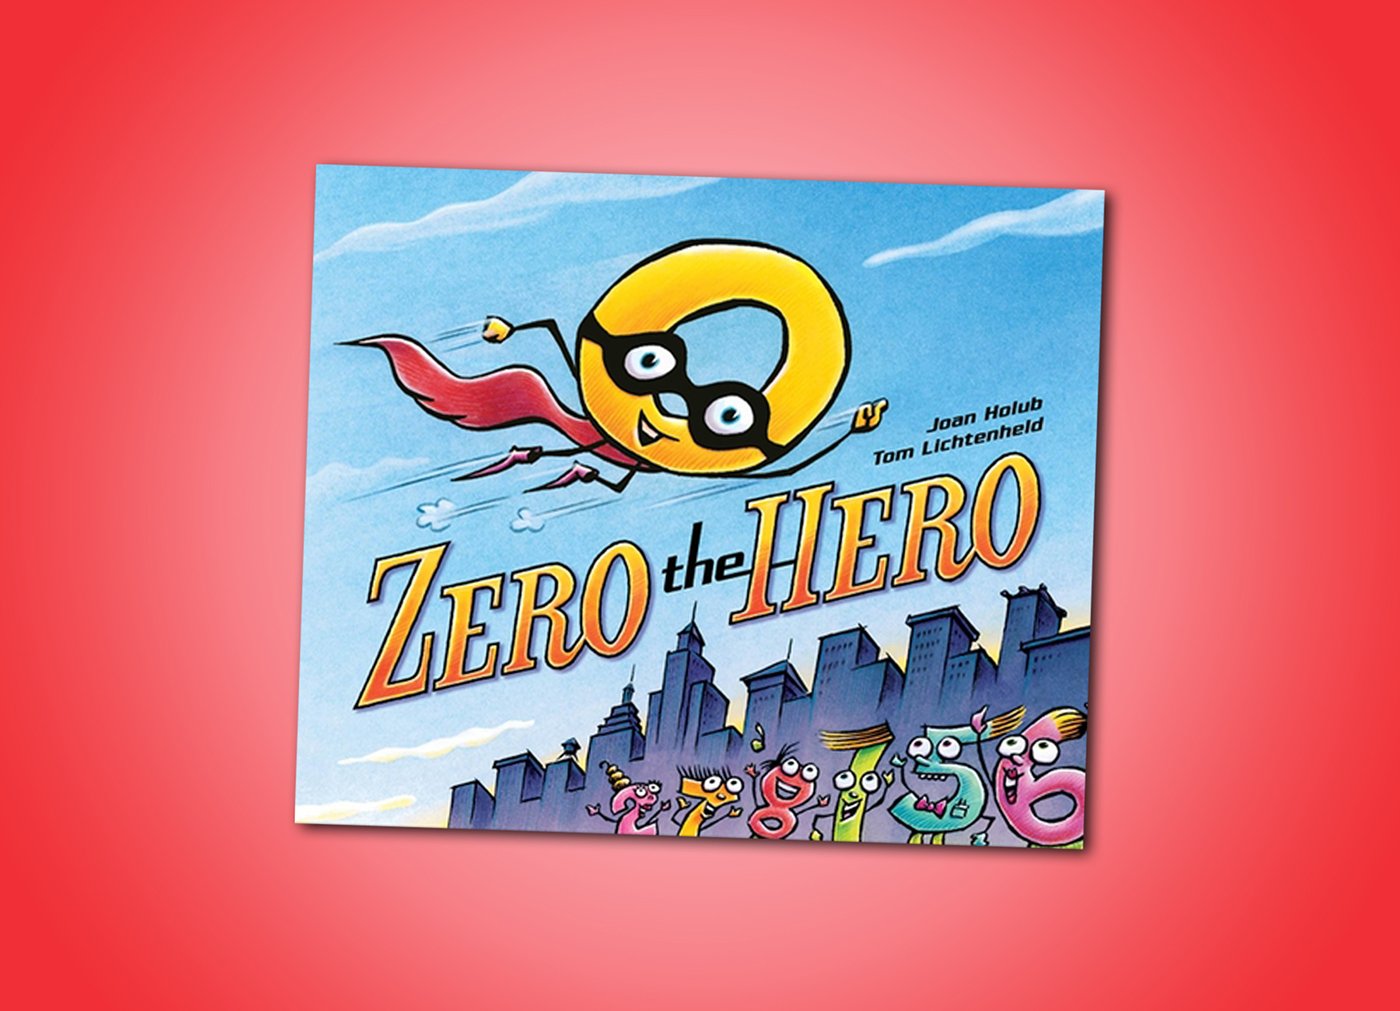 Zero the Hero by Joan Holub and Tom Lichtenheld